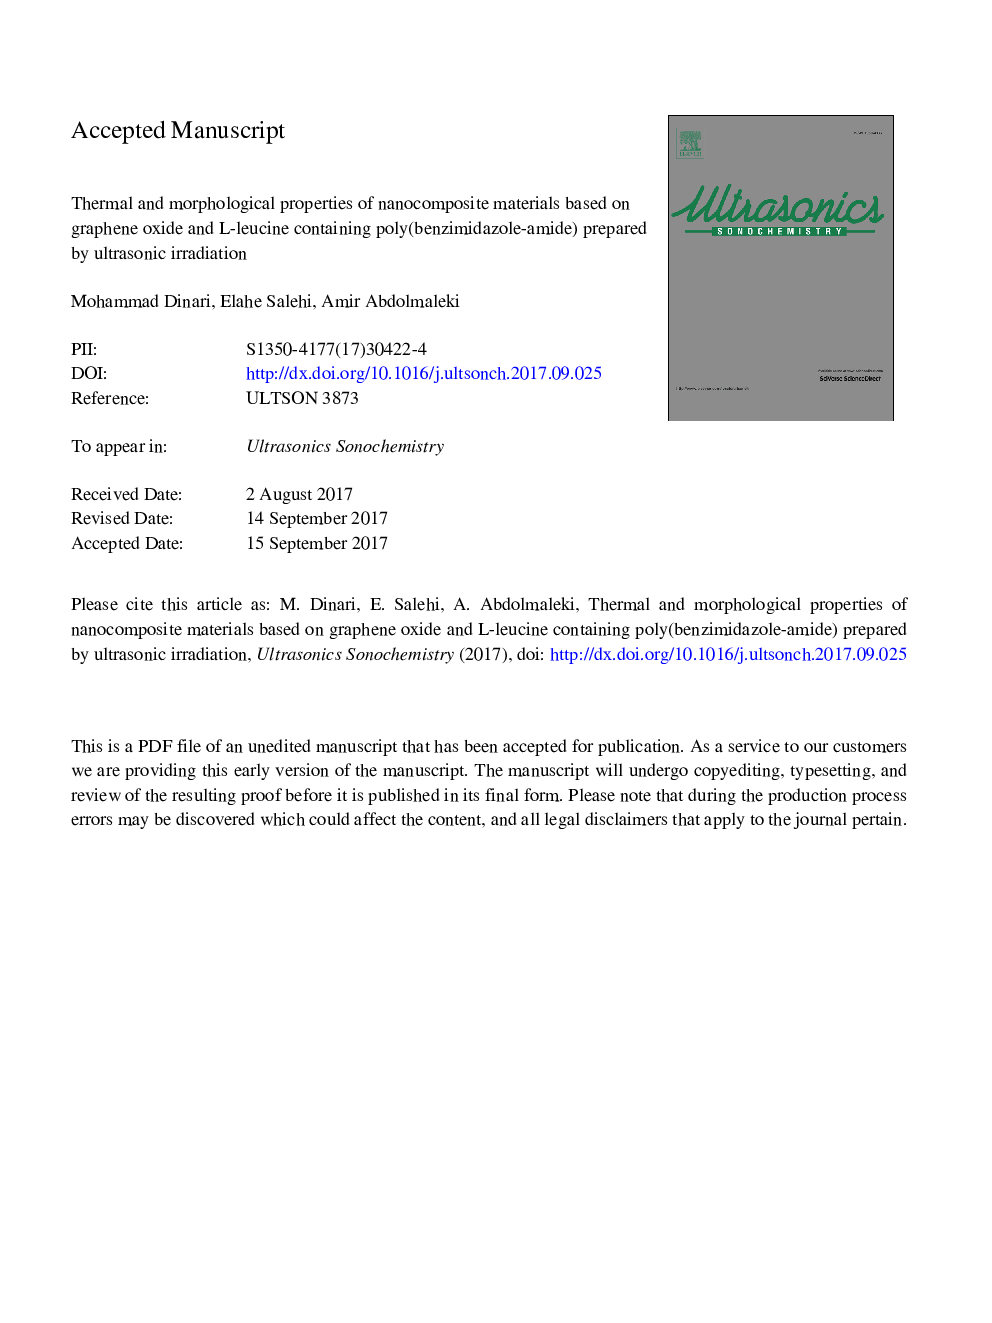 خصوصیات حرارتی و مورفولوژیکی مواد نانو کامپوزیتی بر اساس اکسید گرافین و پلی-بنزیمیدازول آمید حاوی لیپوزین (لیزین) تهیه شده توسط اشعه ماوراء بنفش